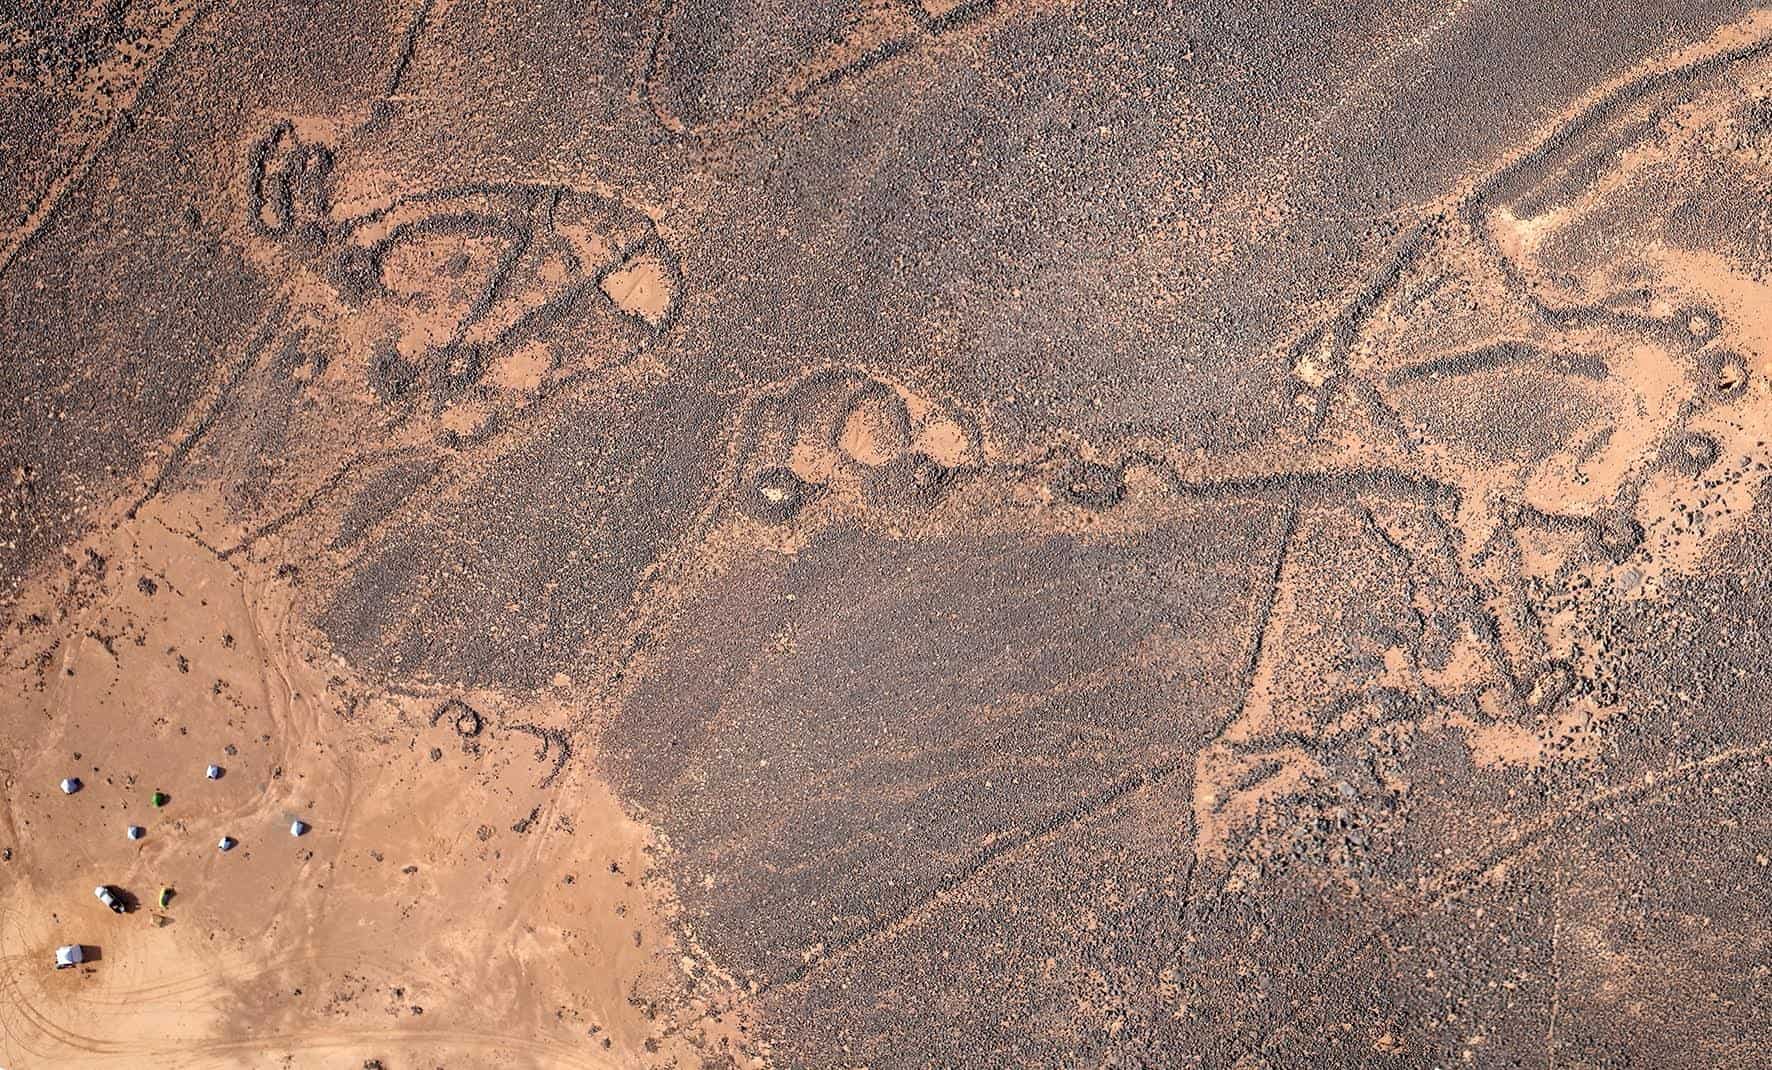 Desert Kites in Jordan